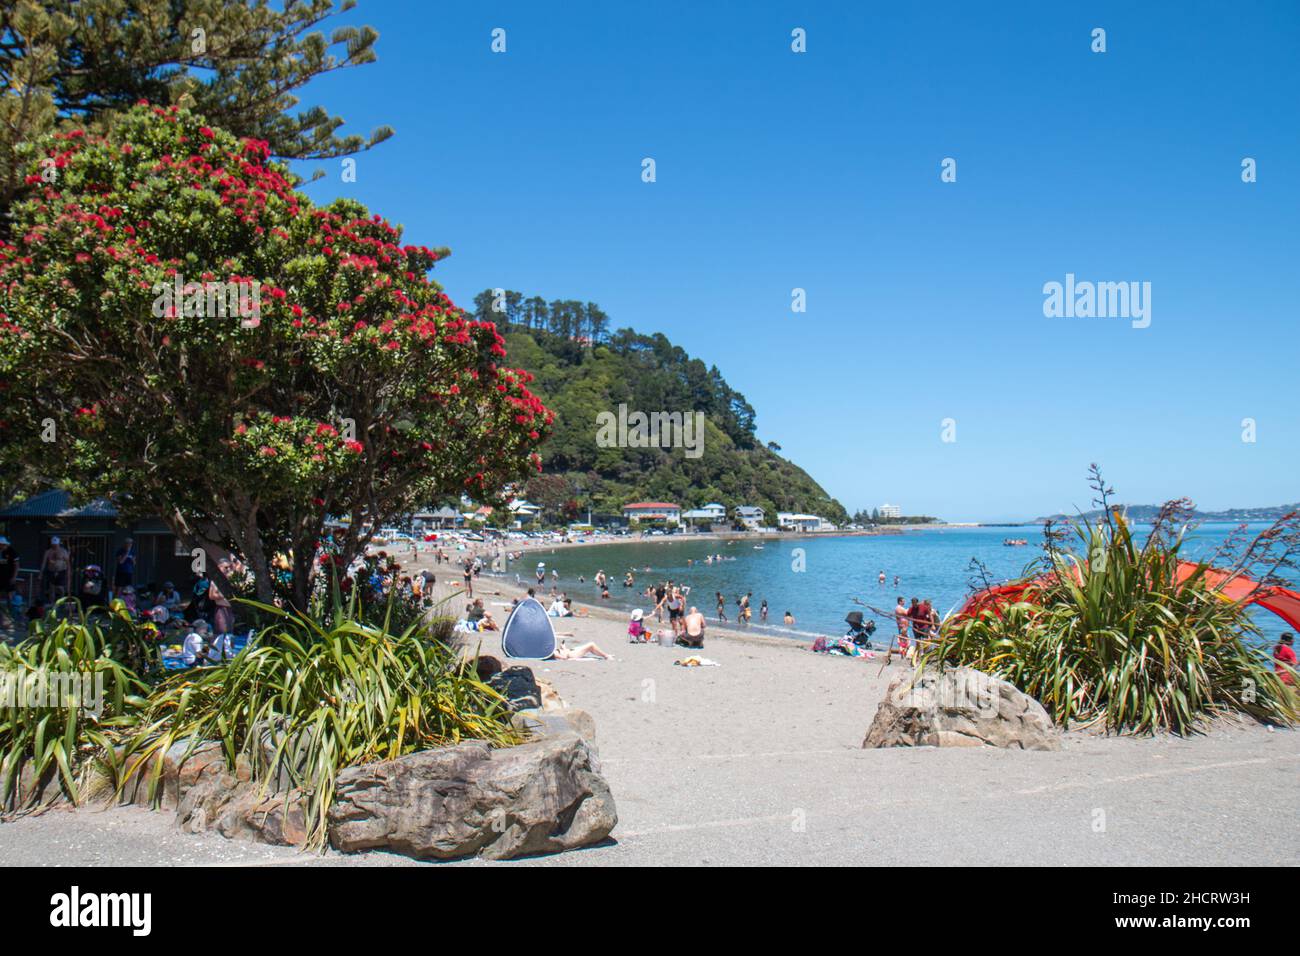 Le jour de l'an 2022 à Days Bay, Wellington, Nouvelle-Zélande, est très fréquenté.Plage et un arbre de Noël NZ en fleur (Pōhutukawa) Banque D'Images